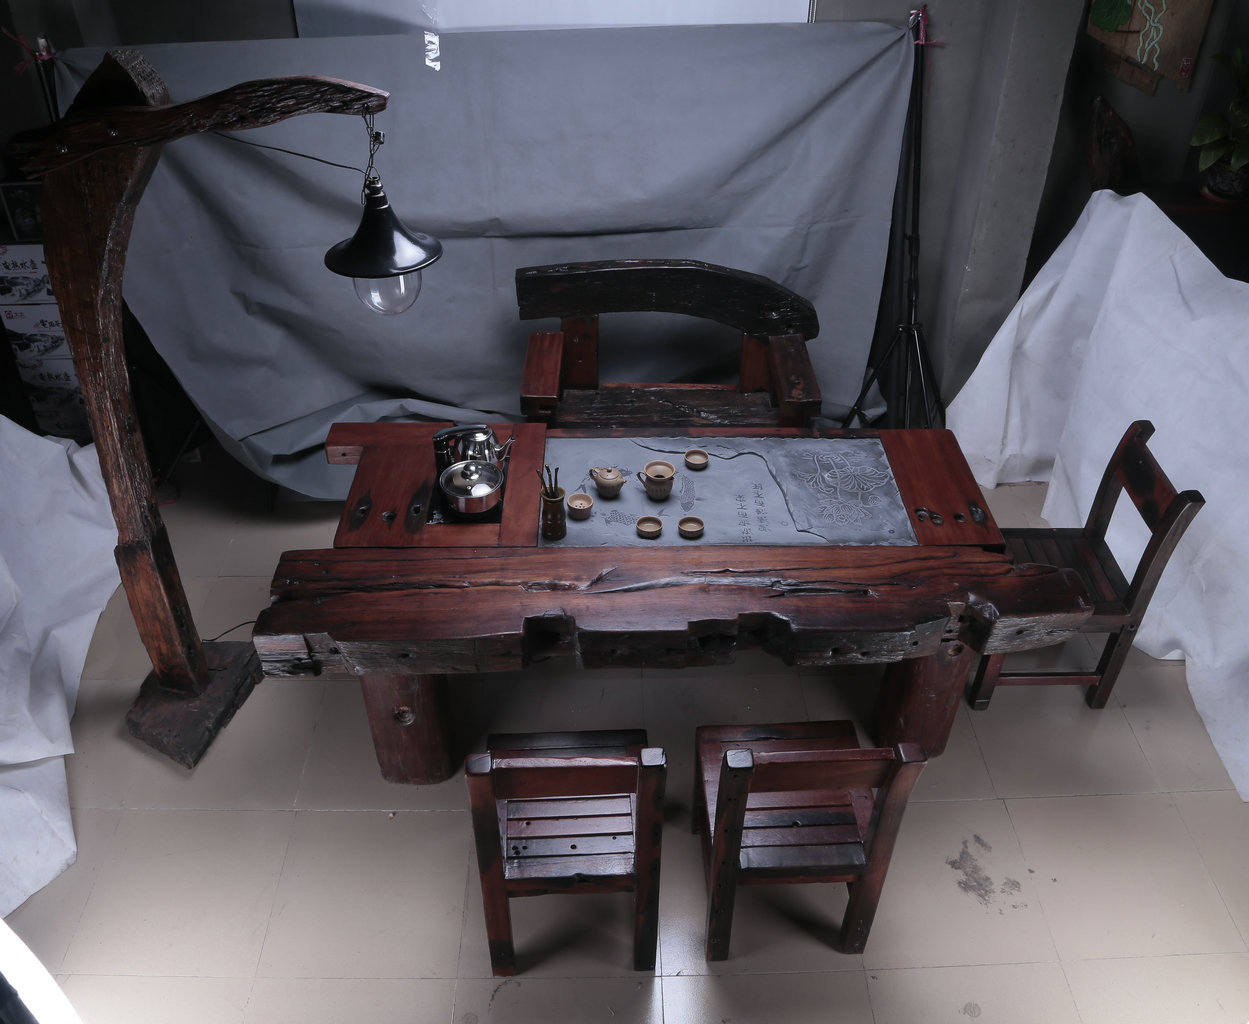 船木茶台/船木椅子/船木办公桌供应船木茶台/船木椅子/船木办公桌